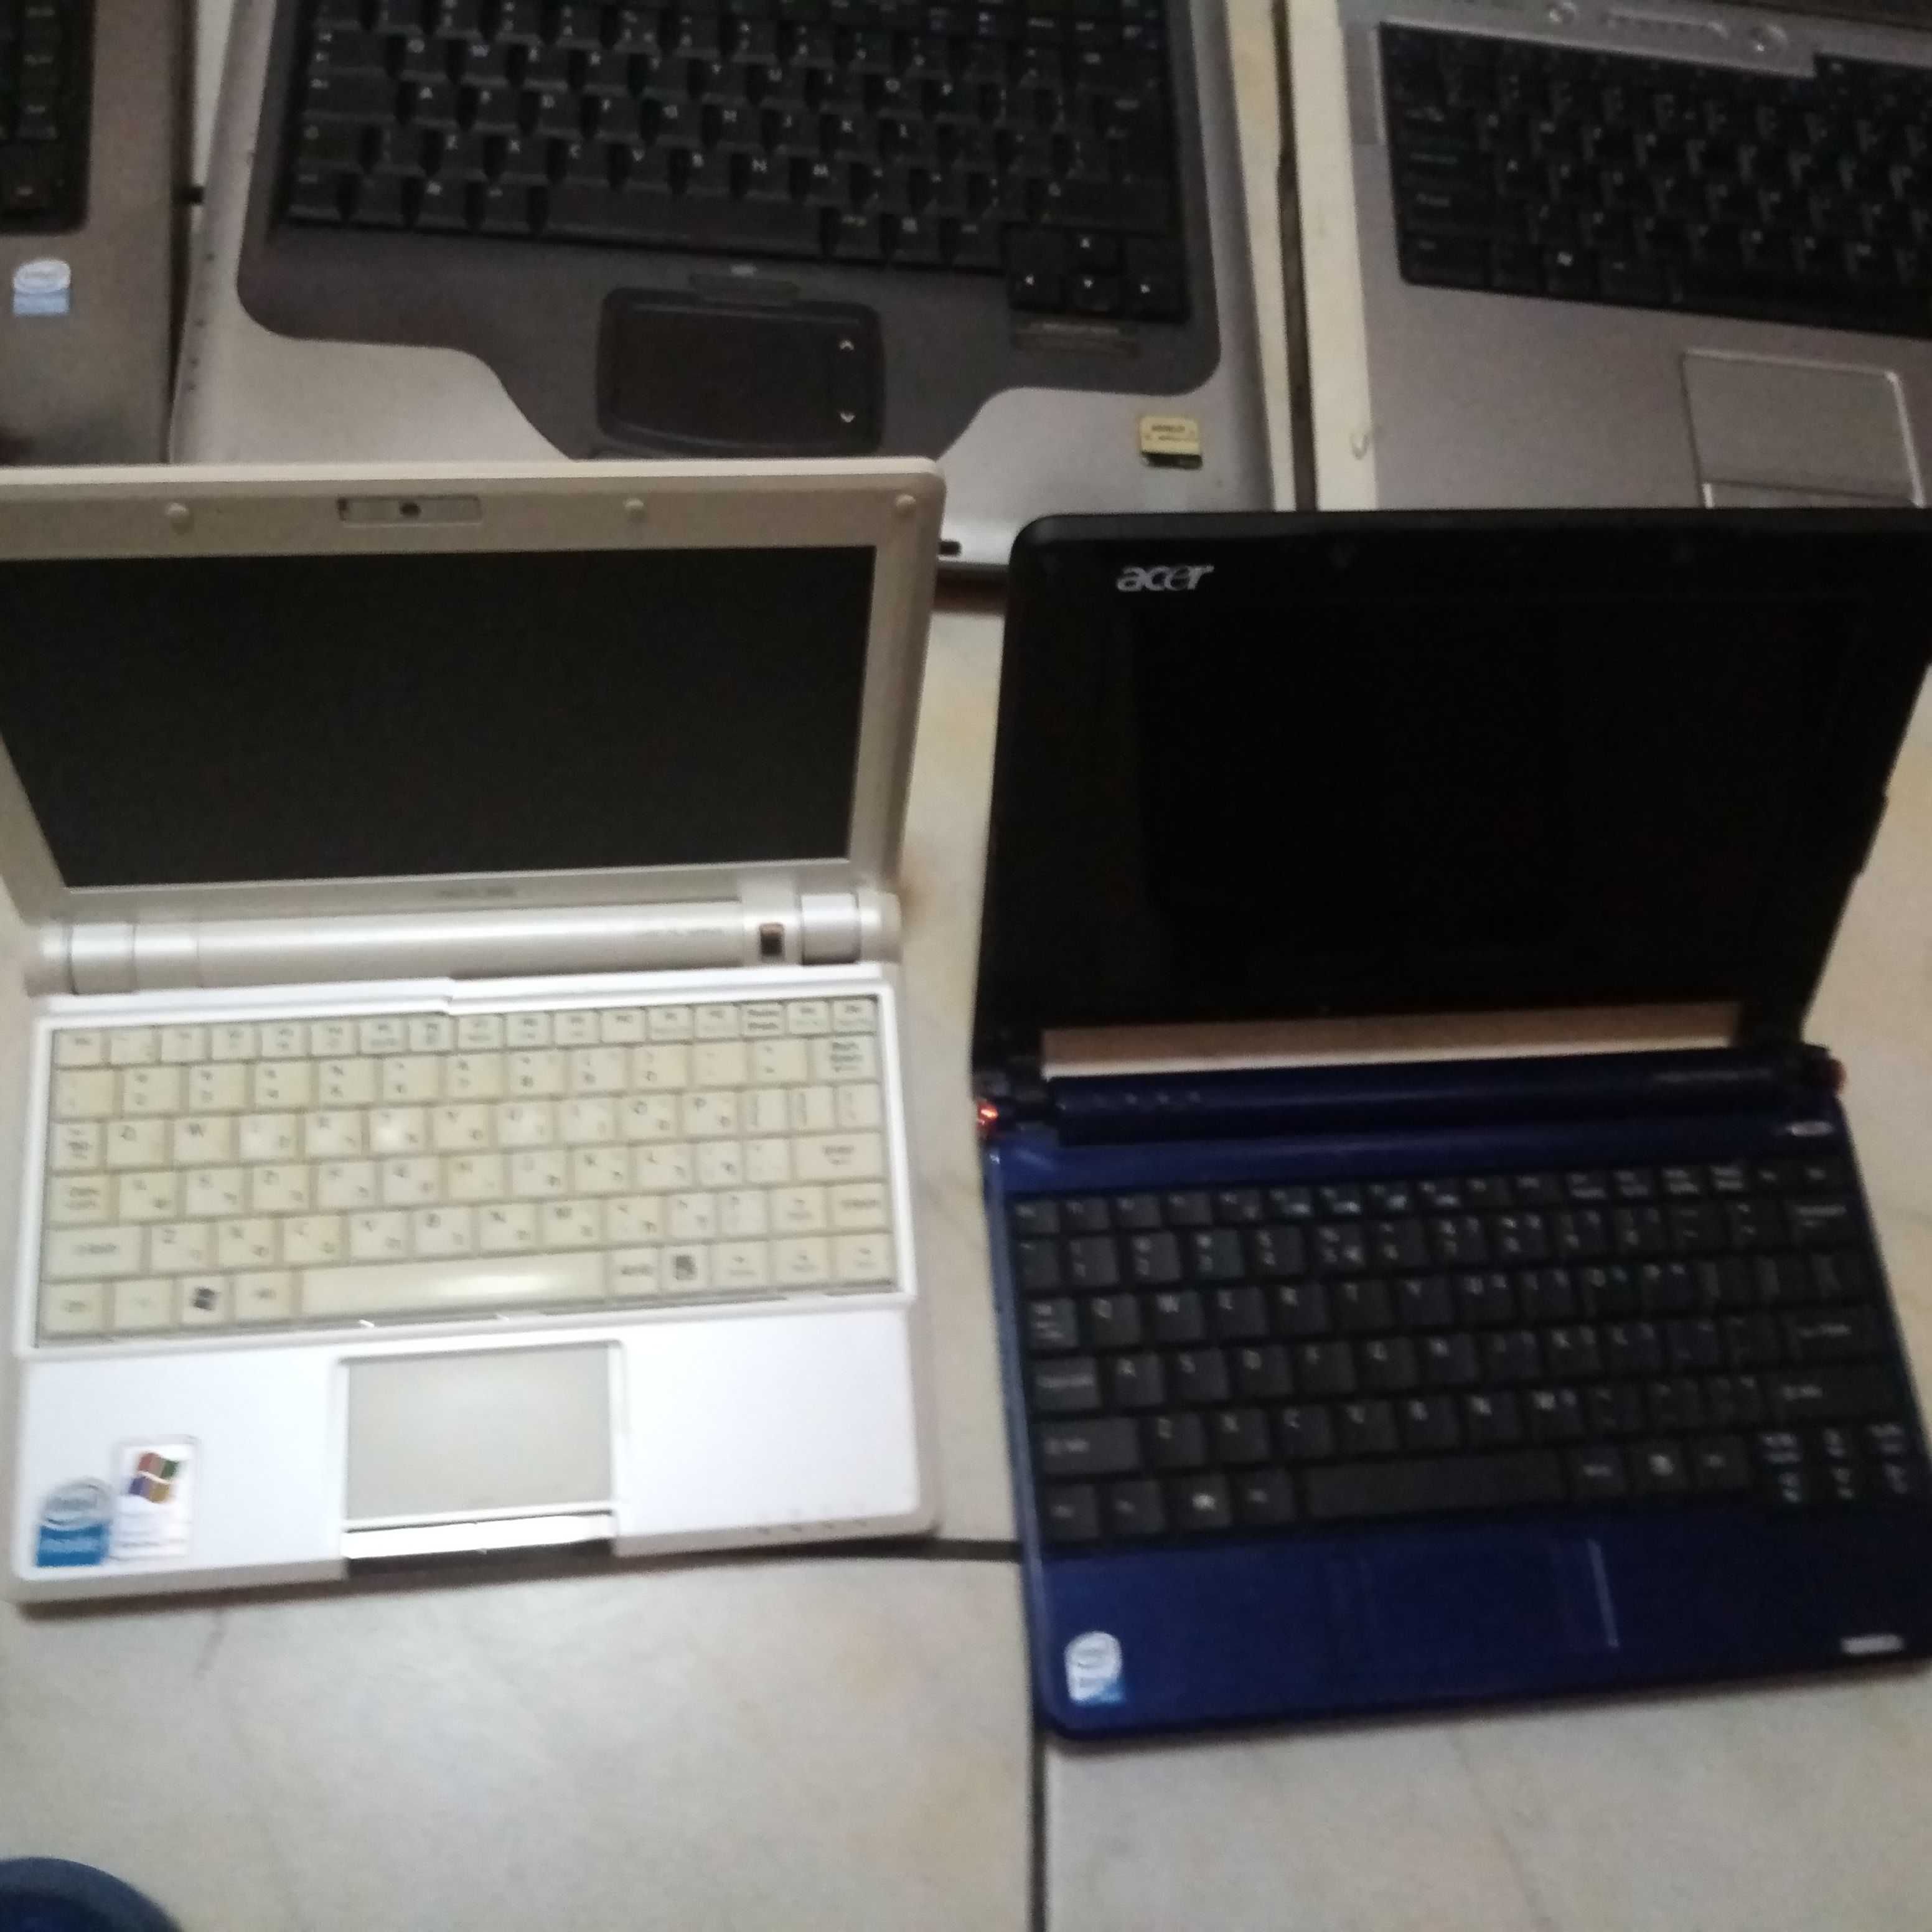 Laptopuri pentru piese -150Lei toate